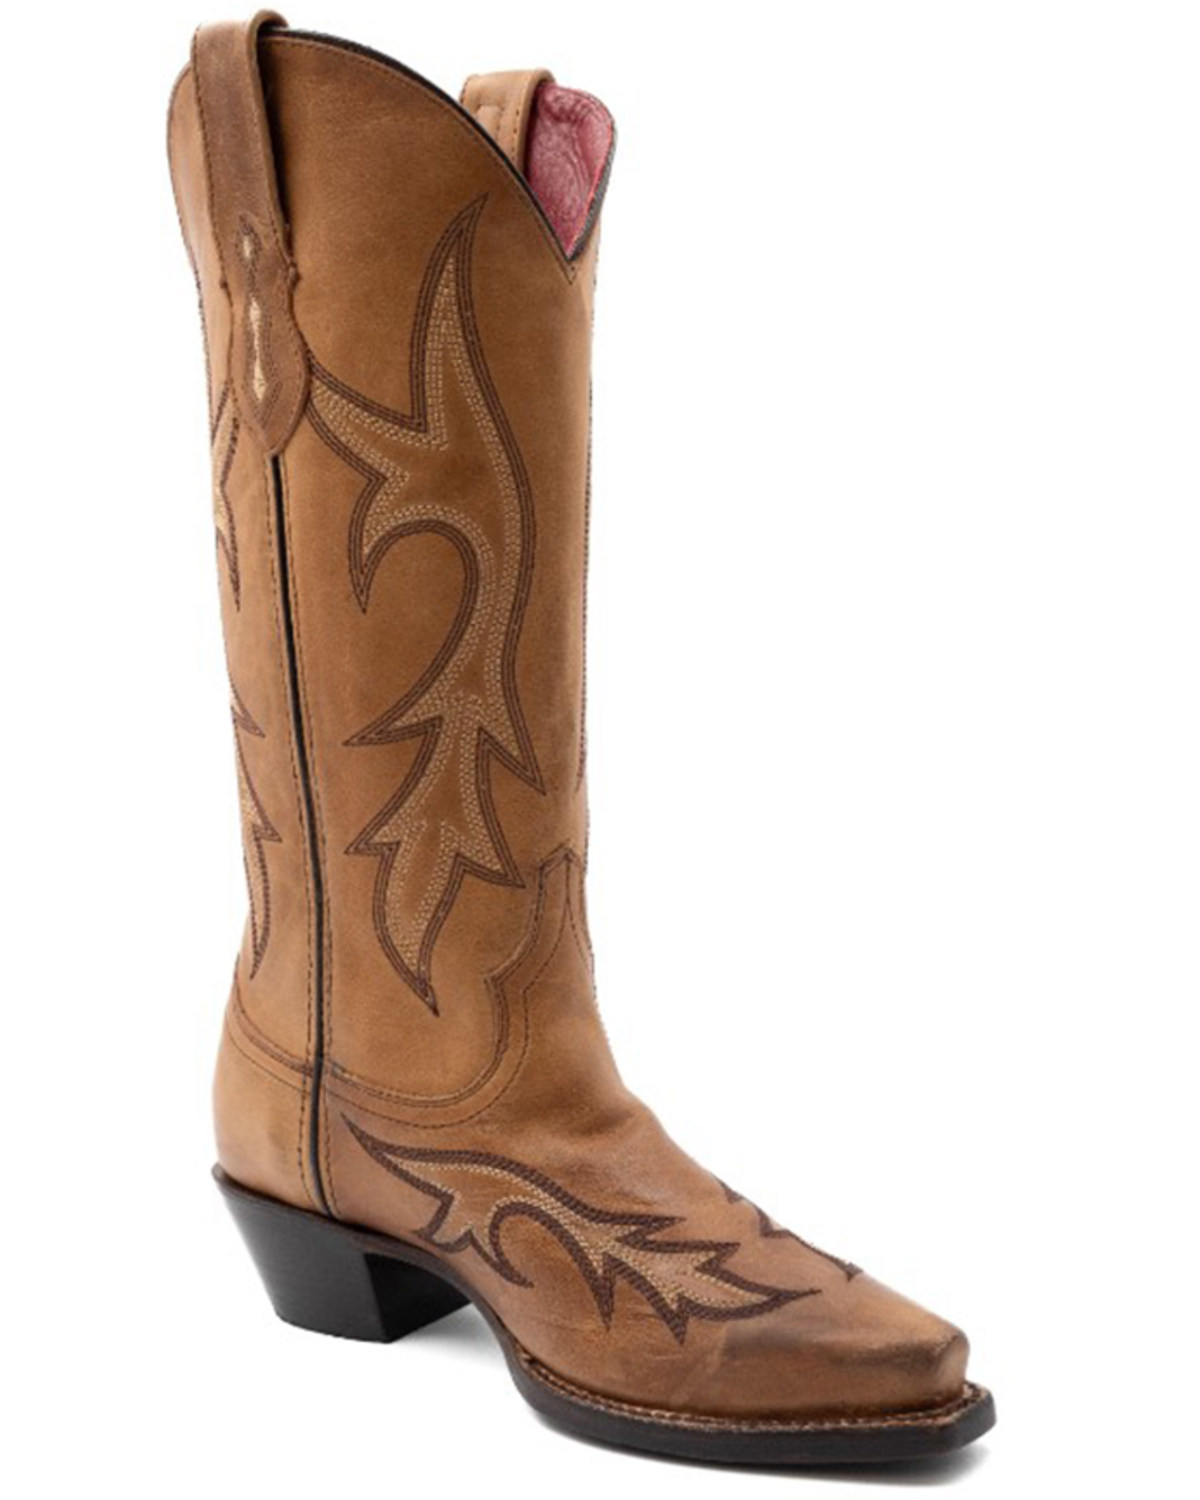 Ferrini Women's Scarlett Western Boots - Snip Toe